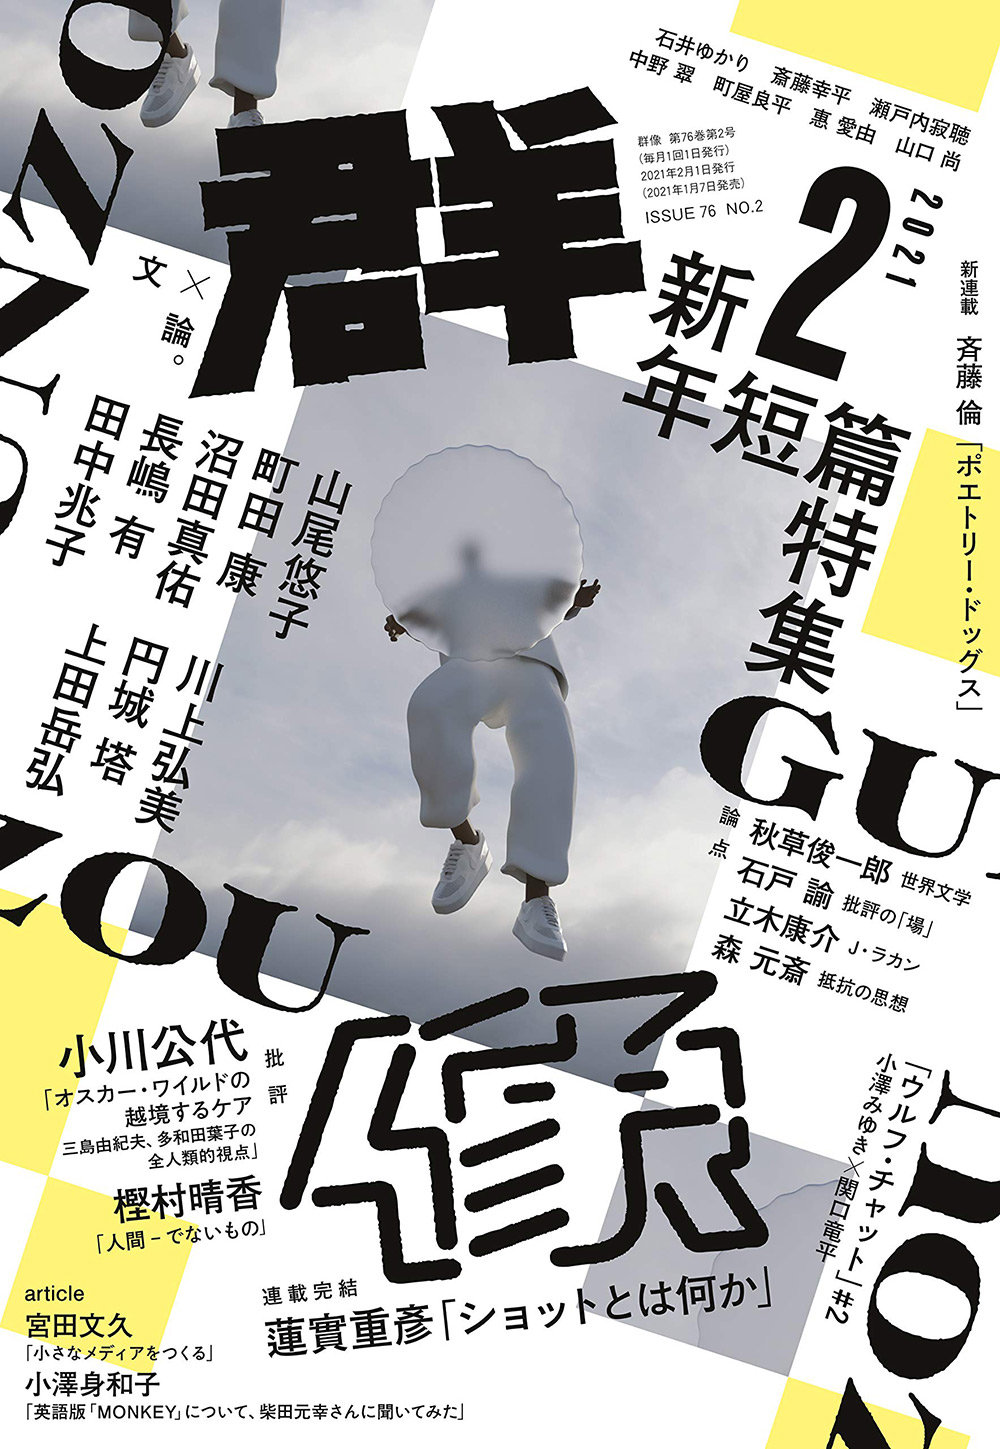 18张日本杂志《群像》封面设计